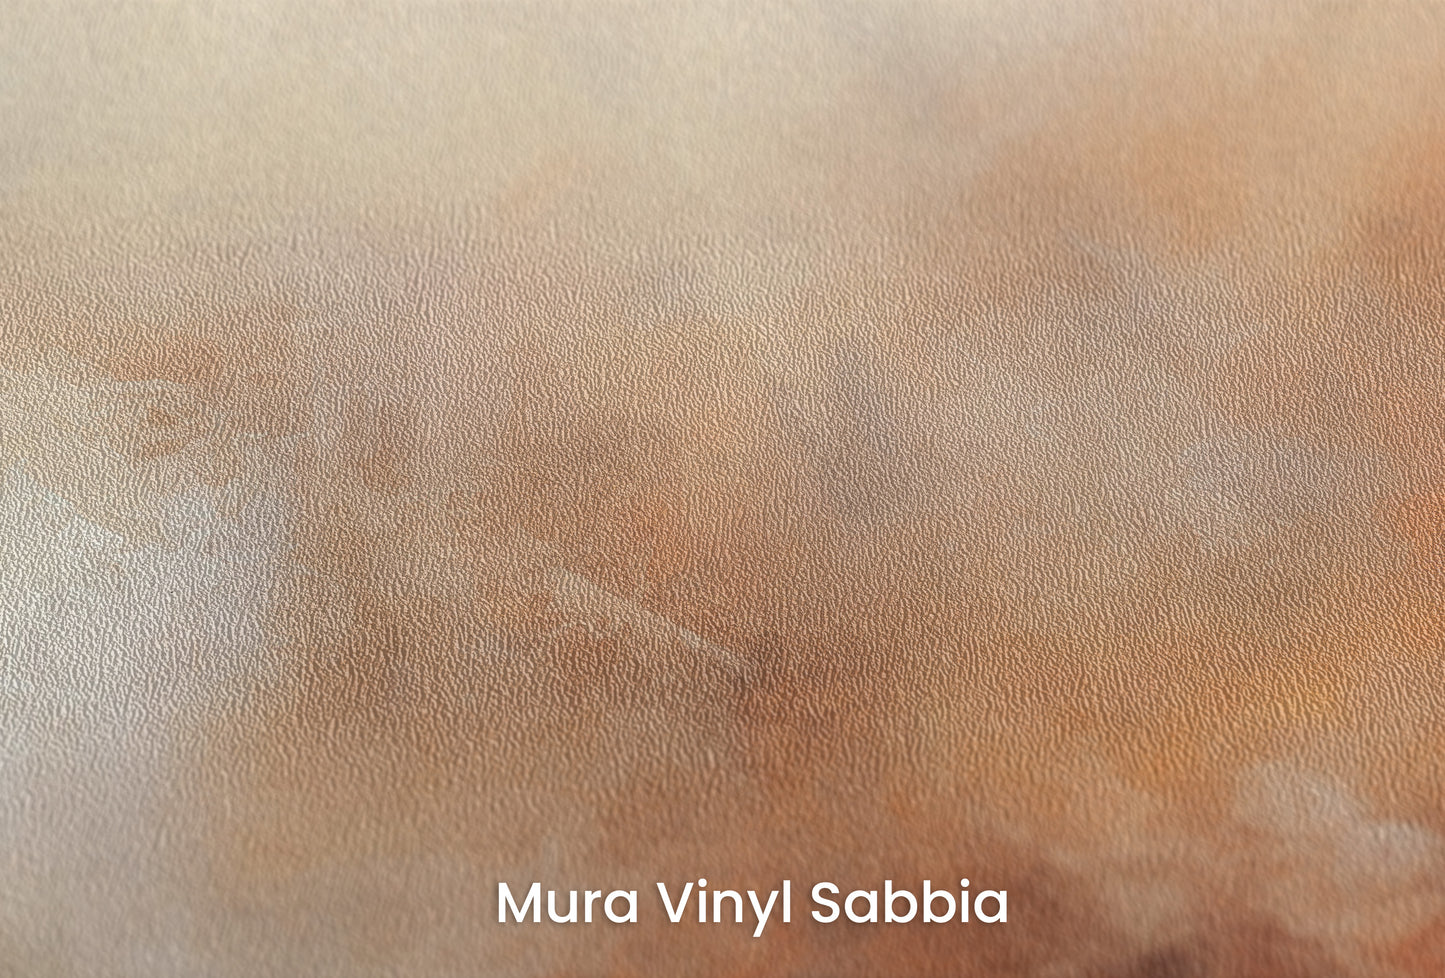 Zbliżenie na artystyczną fototapetę o nazwie DUSK RADIANCE ABSTRACT na podłożu Mura Vinyl Sabbia struktura grubego ziarna piasku.